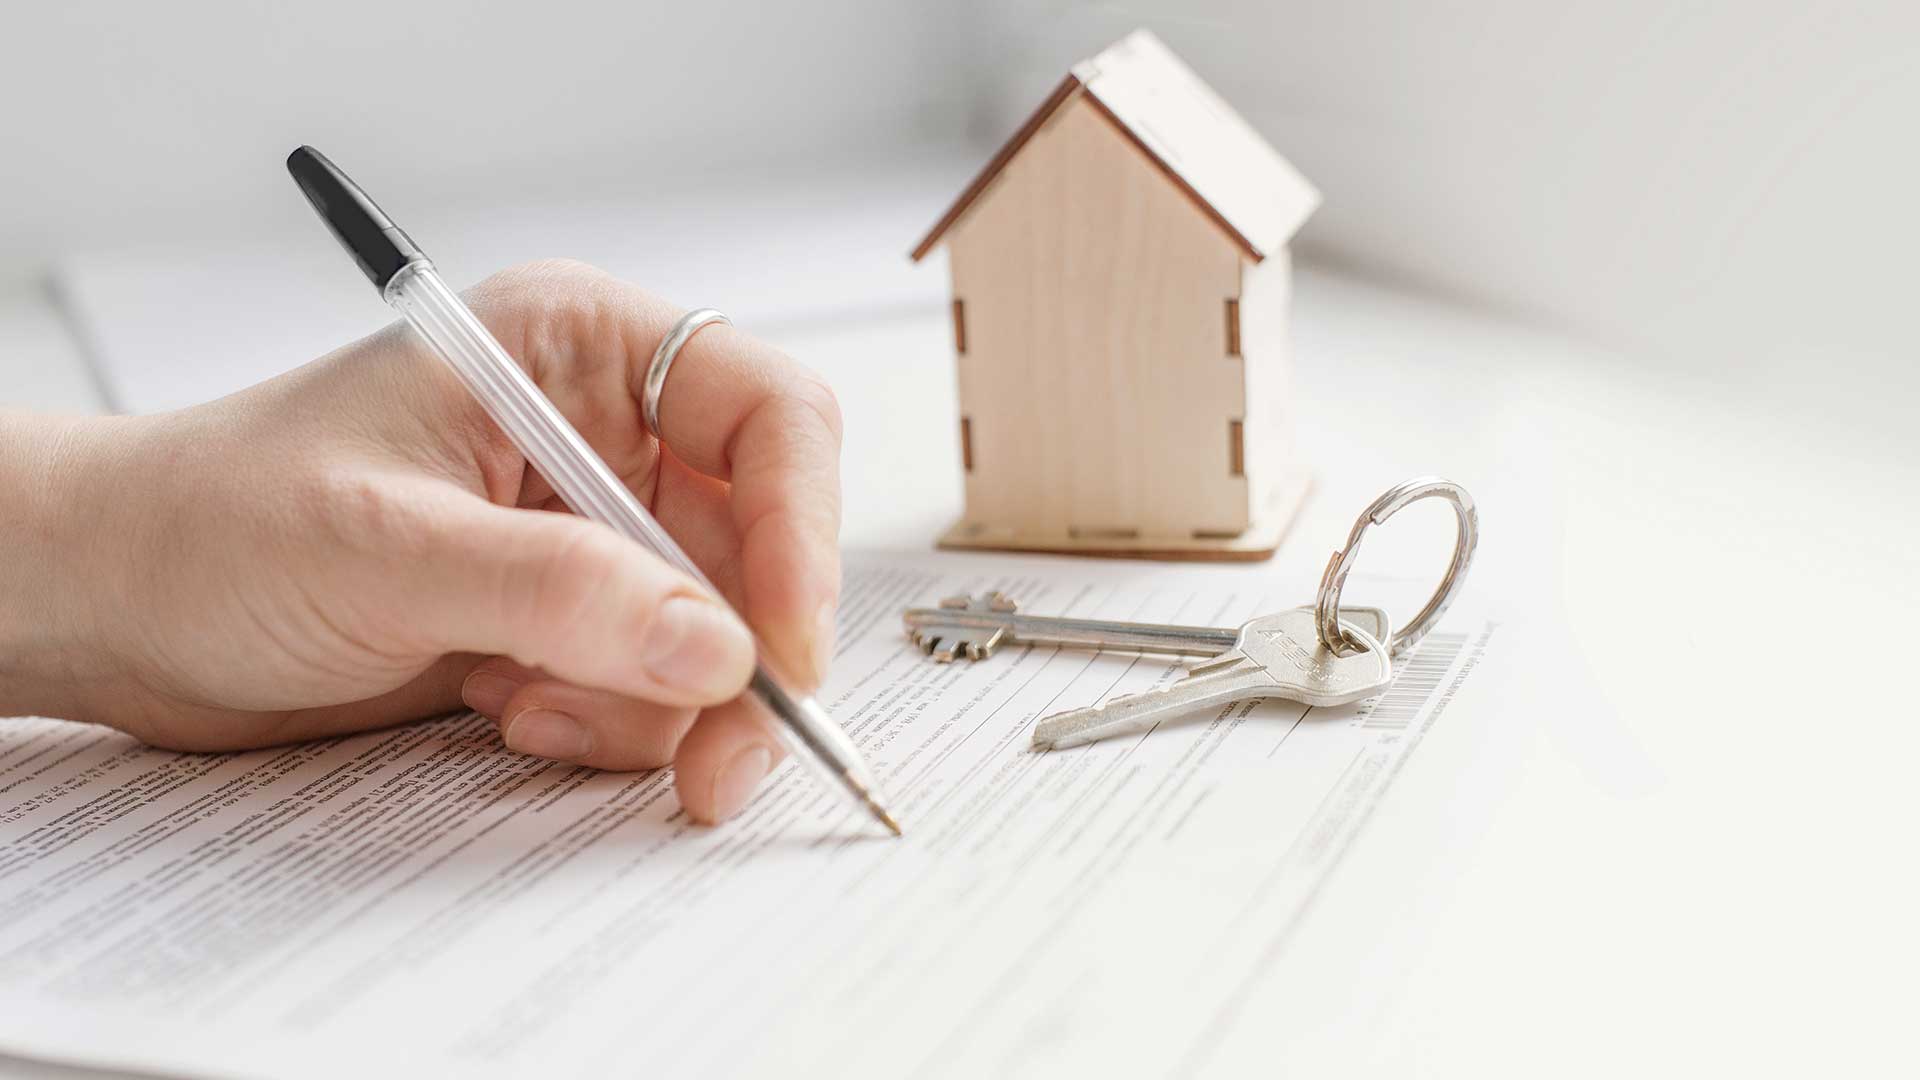 zbliżenie na dłoń podpisującą wniosek o wykreślenie hipoteki